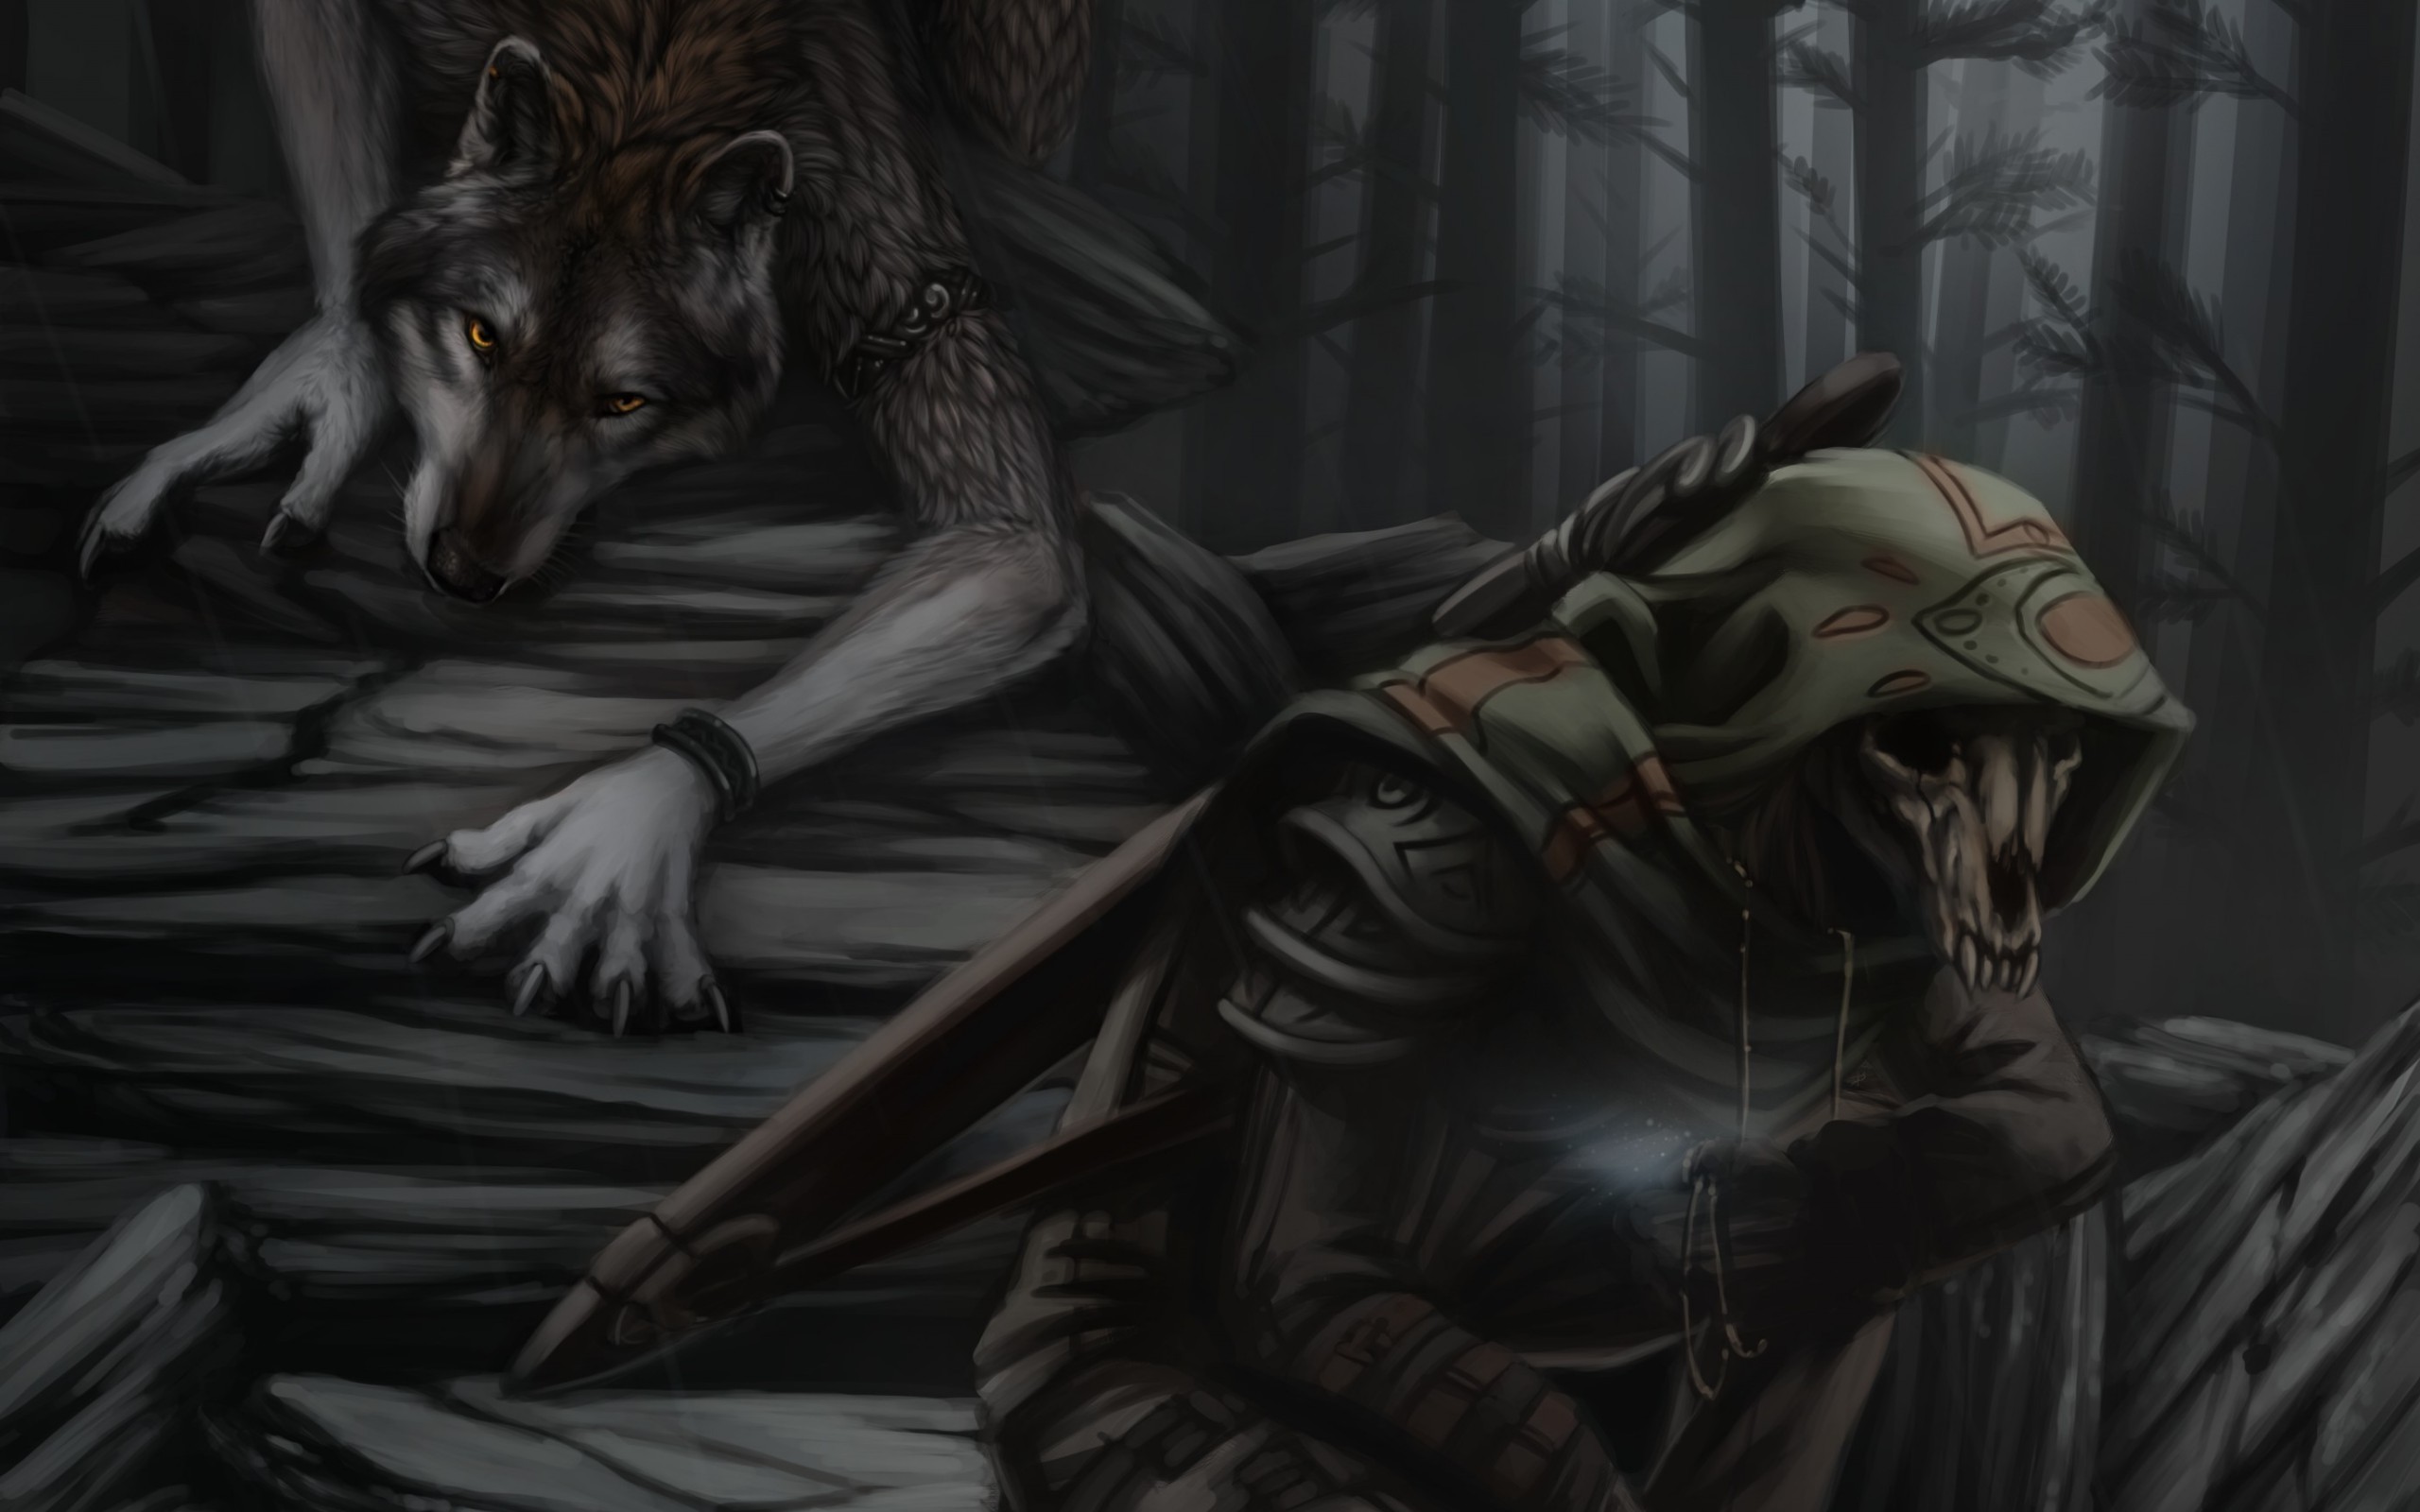 Werewolf Reaper fantasy h wallpaper 2560x1600 168976 WallpaperUP 2560x1600